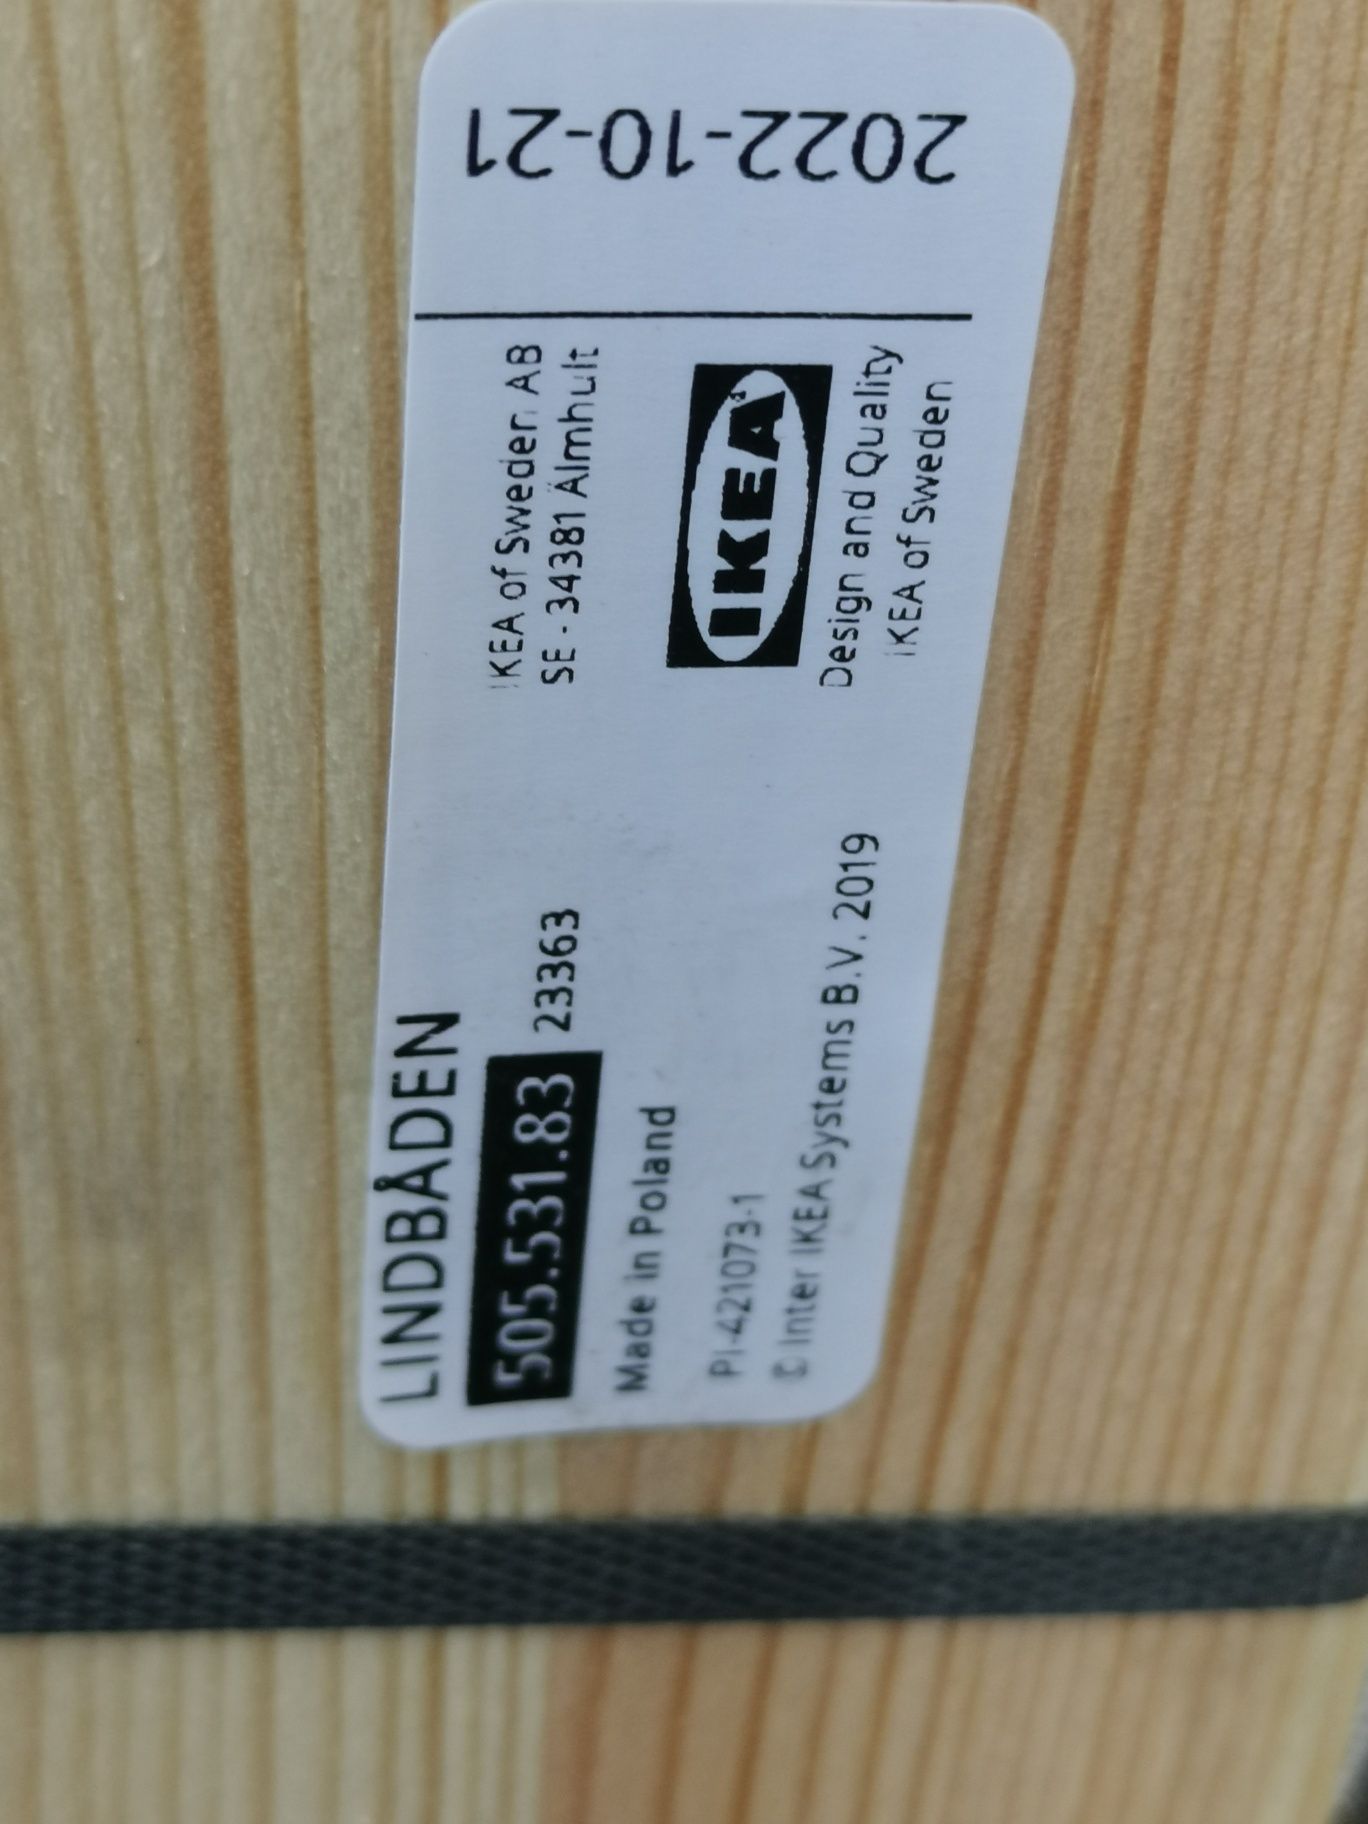 2x Nowy  za 50% CENY Wkład pod materac LINBADEN  IKEA 80cm